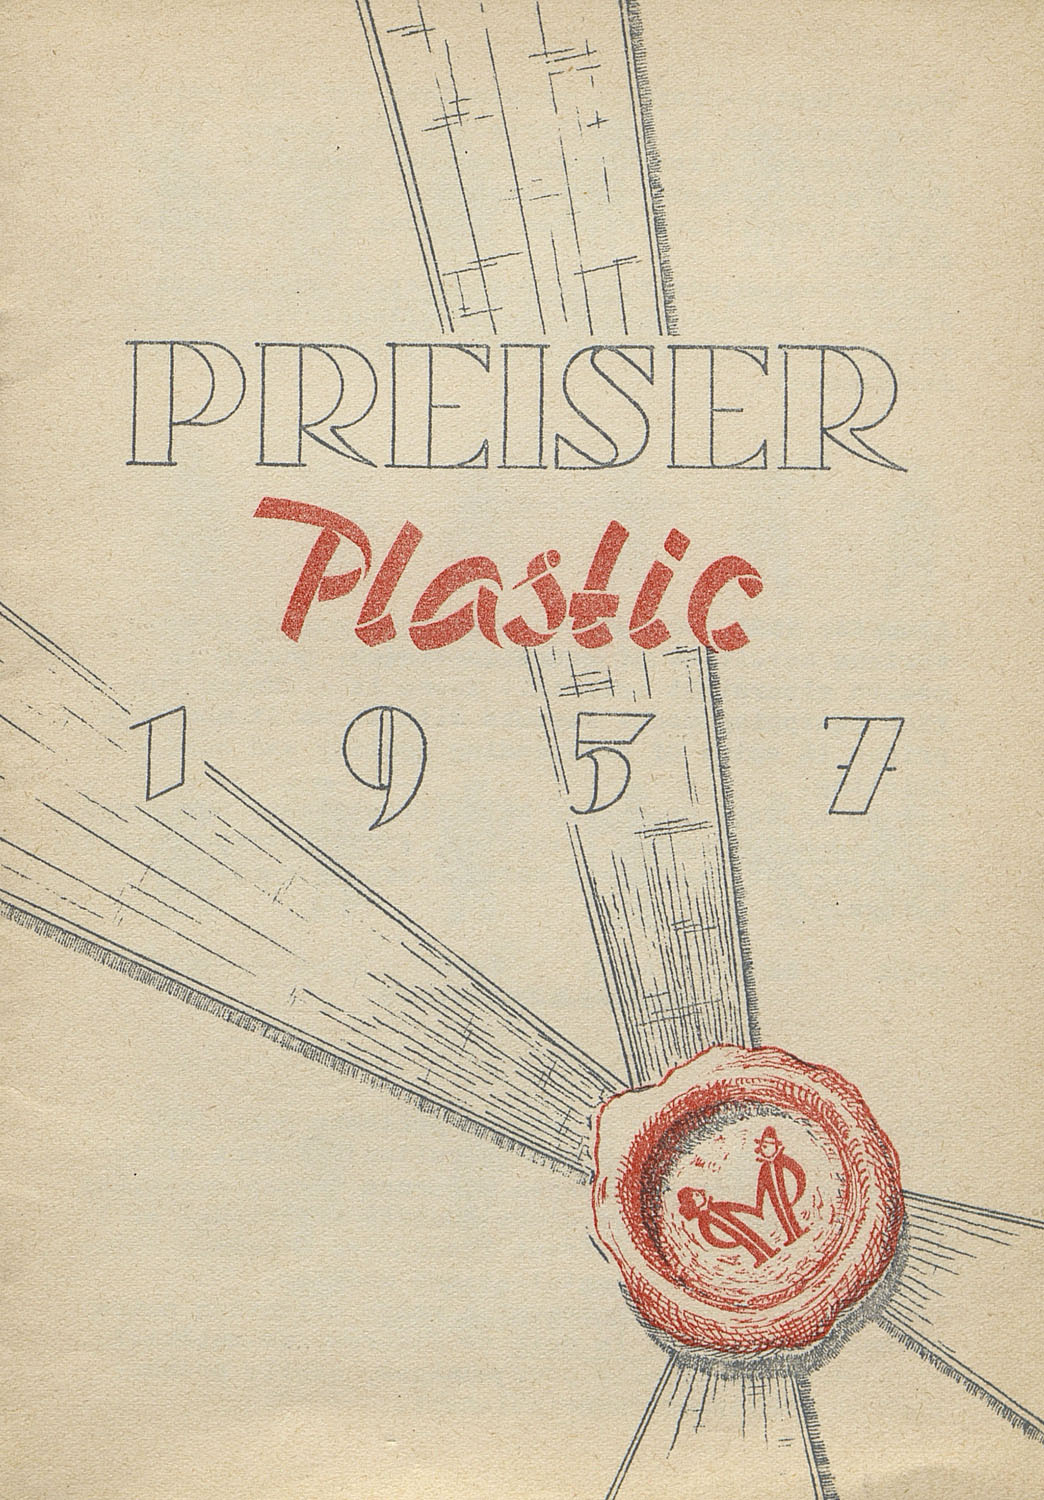 Preiser Plastic 1957